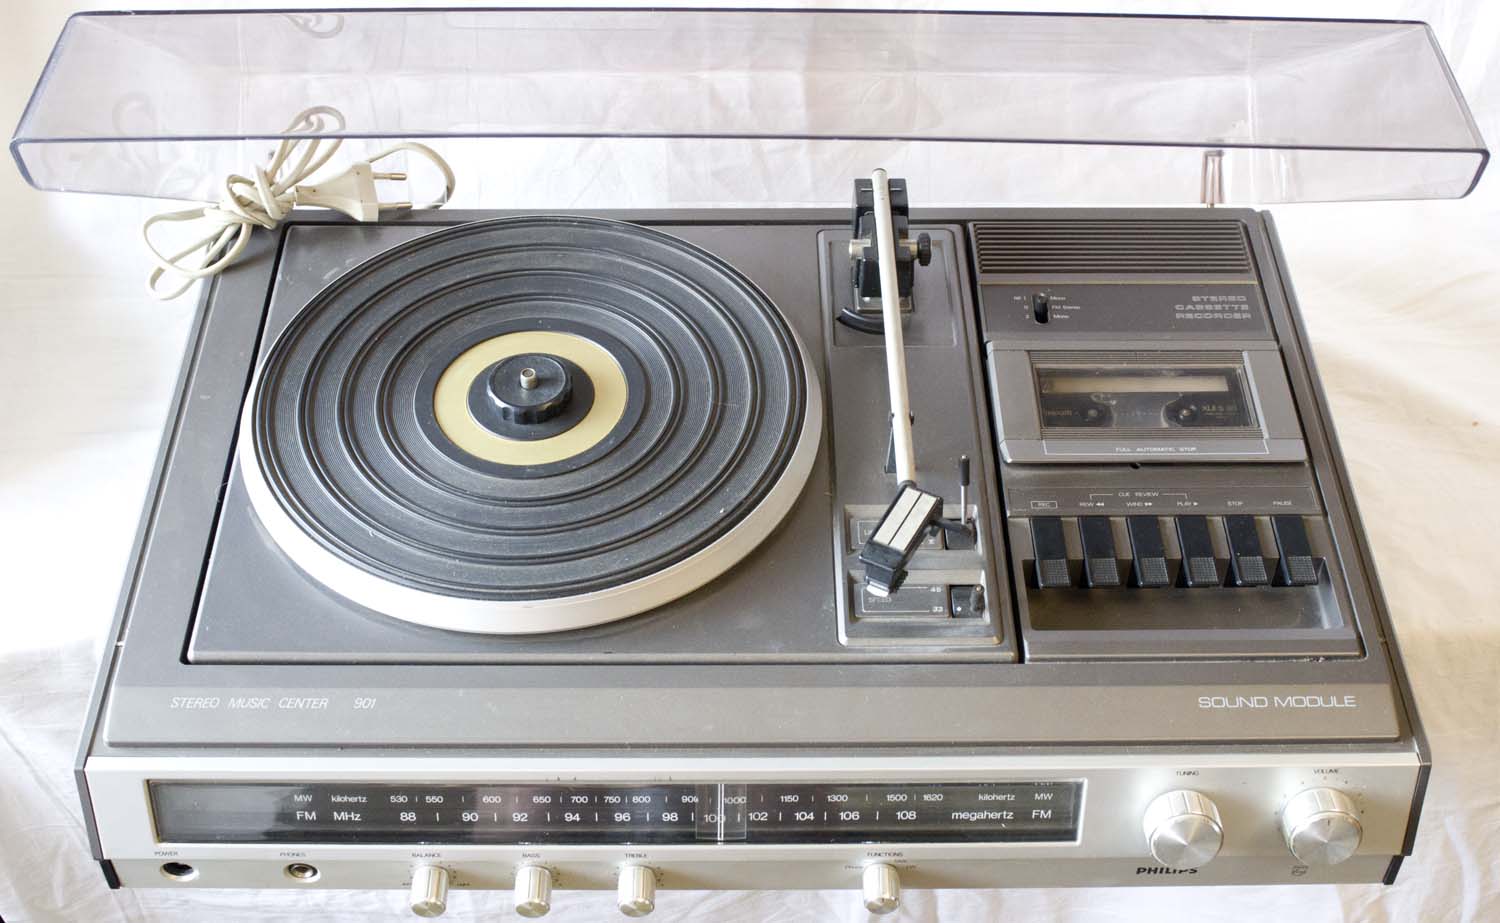 Однокассетный виниловый музыкальный центр Philips типа пано плита всё в одном: винил, кассета, тюнер, усилитель